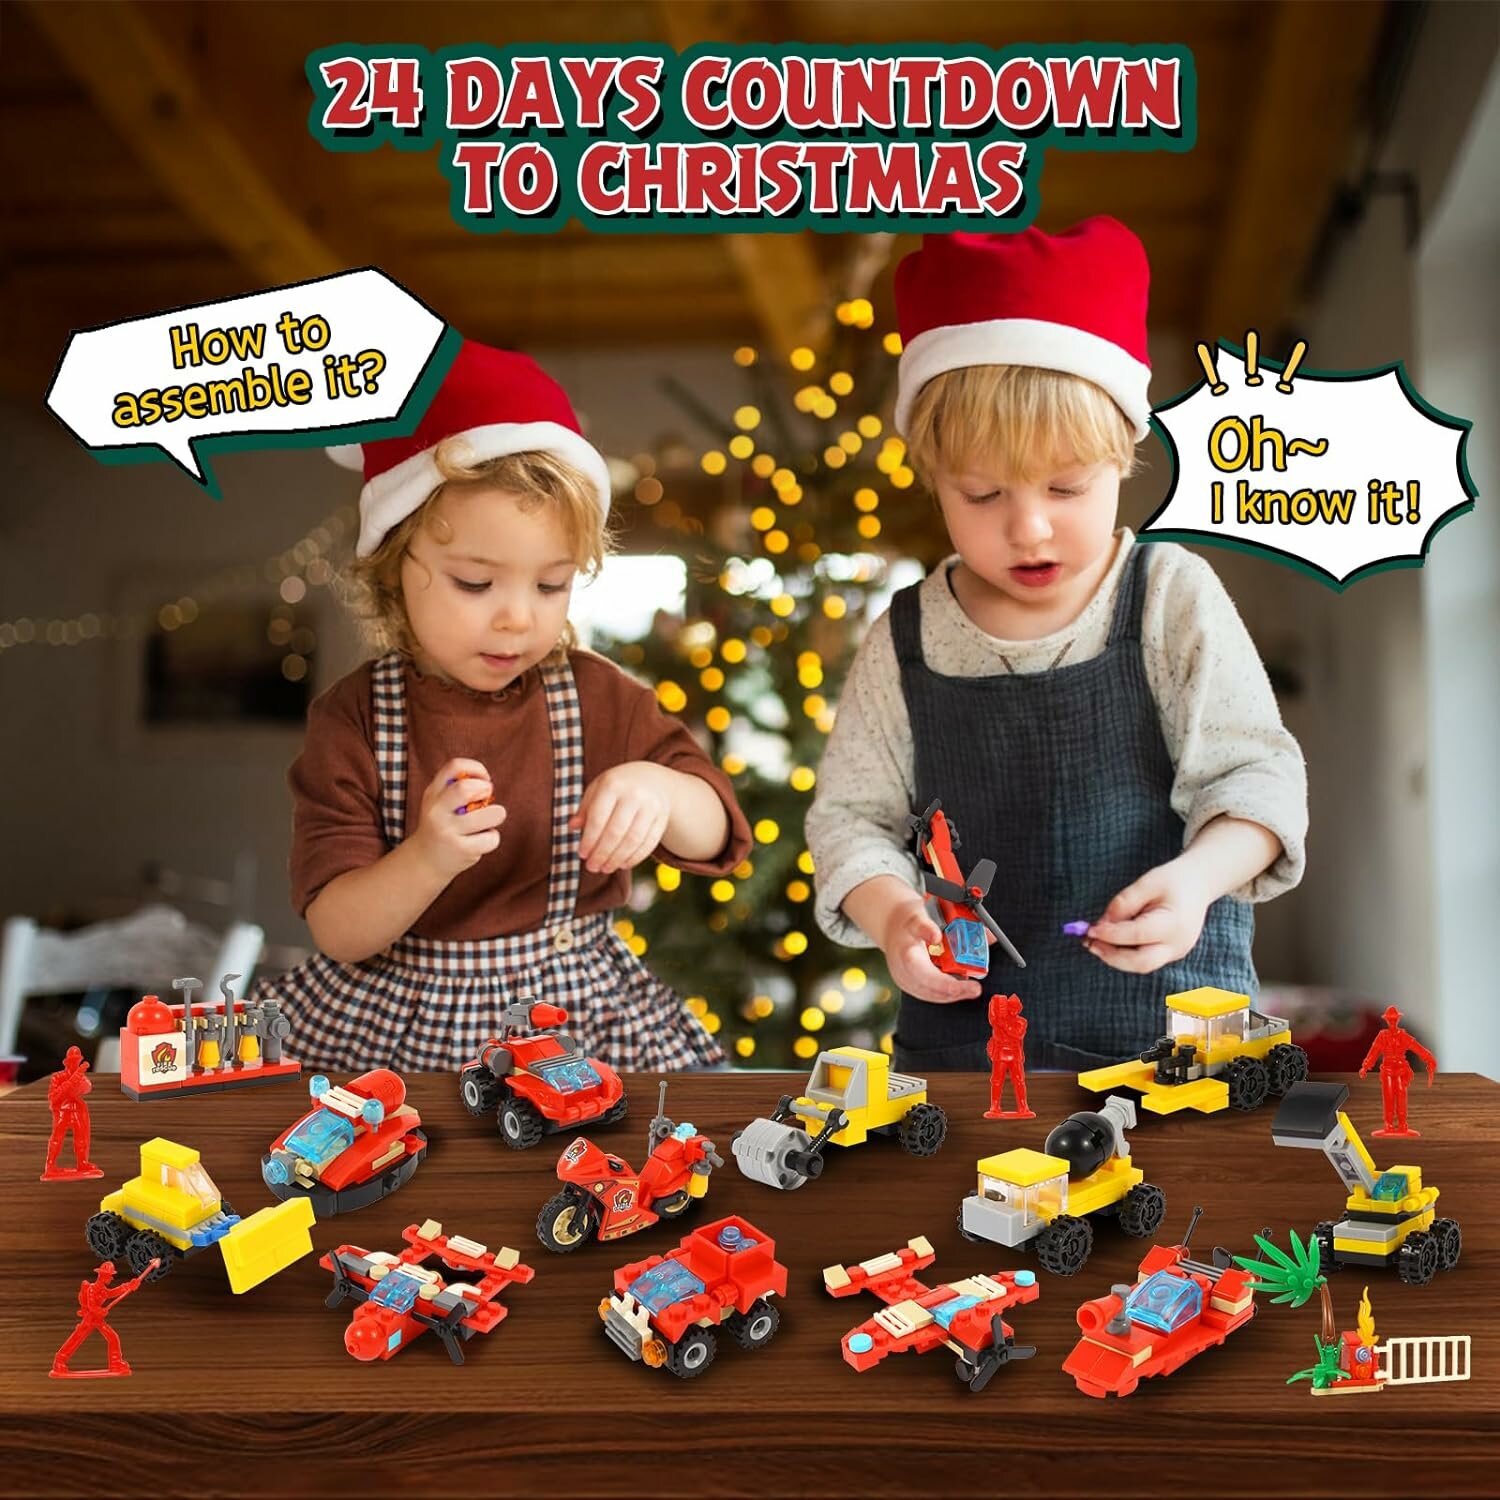 Фигурка Адвент календарь с игрушками машинками для мальчиков, 24 сюрприза